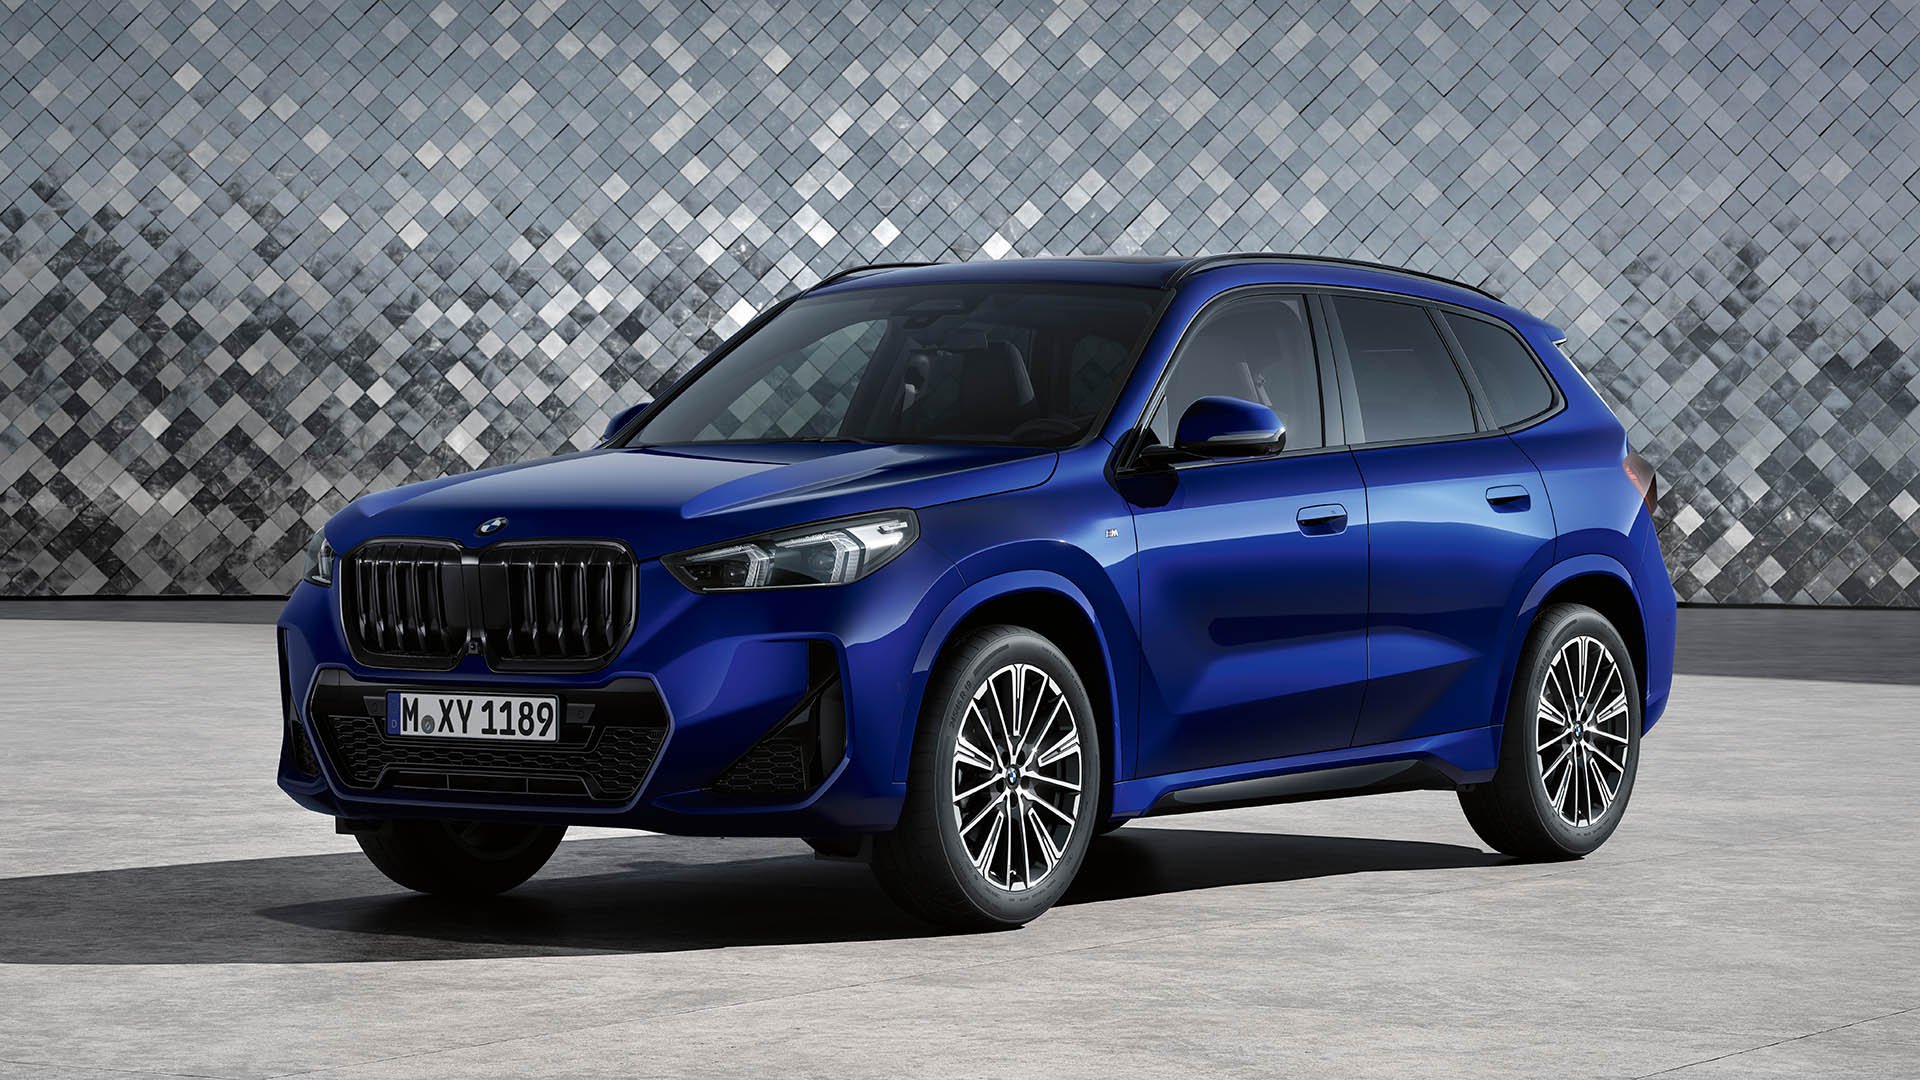 BMW lança novo X1 em três versões